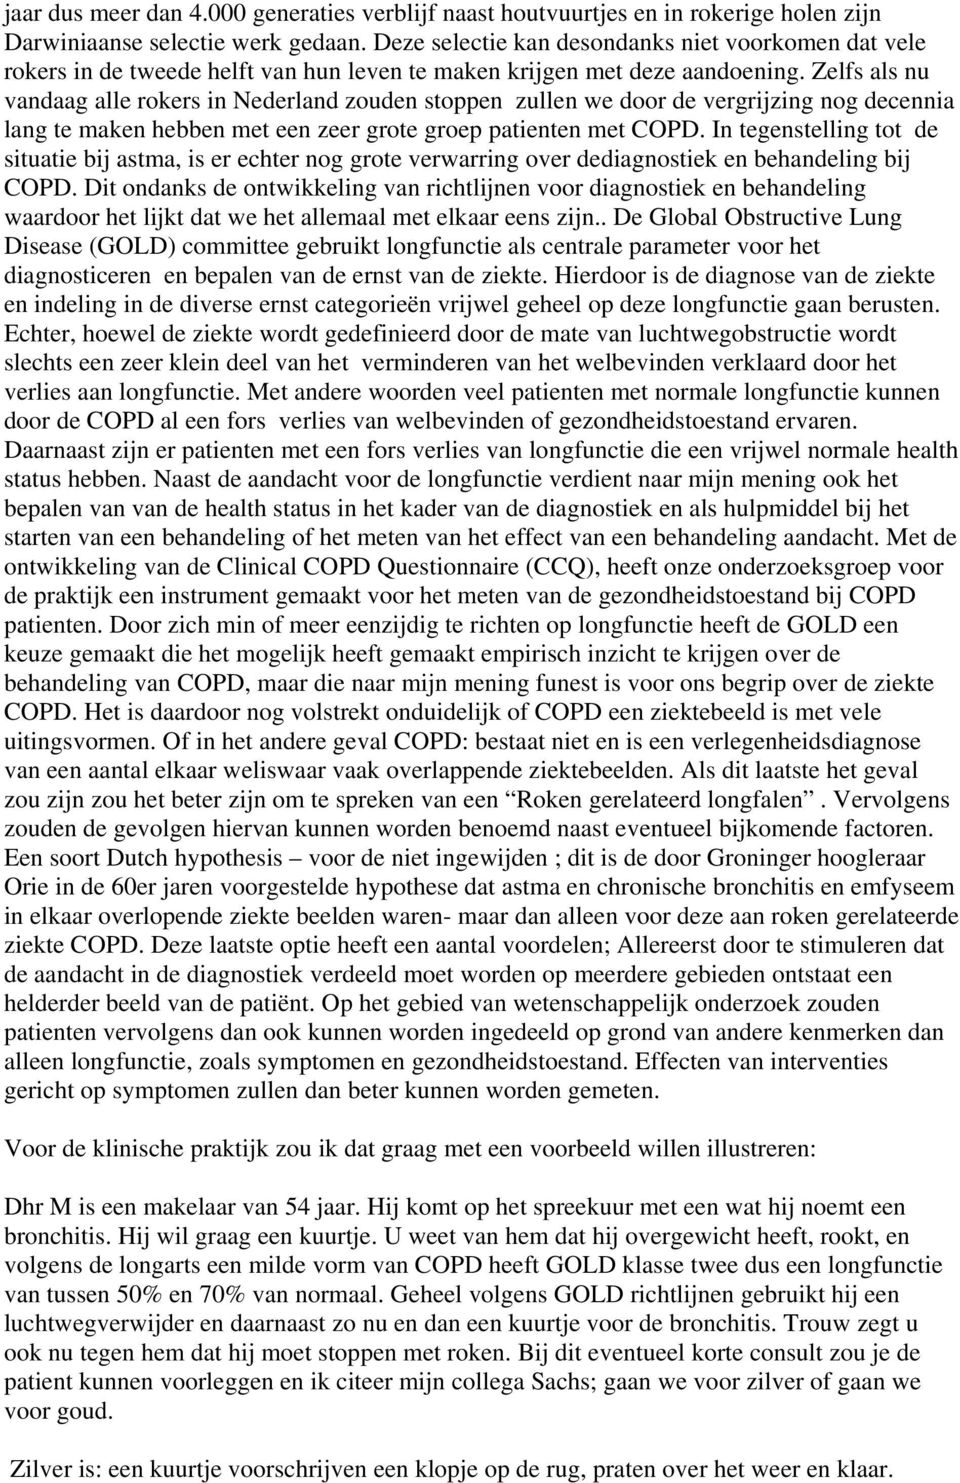 Zelfs als nu vandaag alle rokers in Nederland zouden stoppen zullen we door de vergrijzing nog decennia lang te maken hebben met een zeer grote groep patienten met COPD.